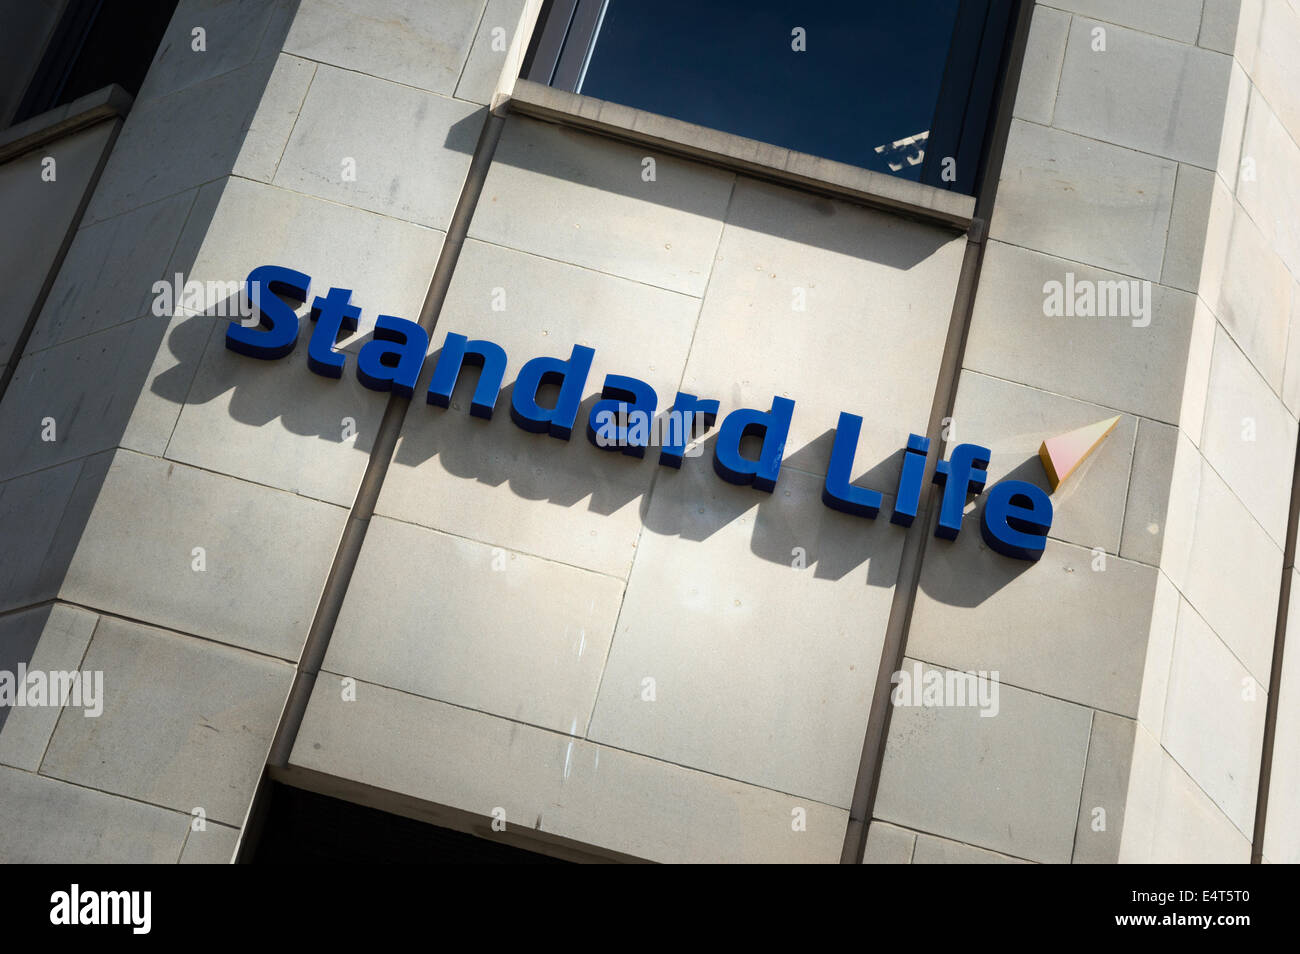 Standard Life-Logo an der Seite des Gebäudes Standard Life, Edinburgh Stockfoto